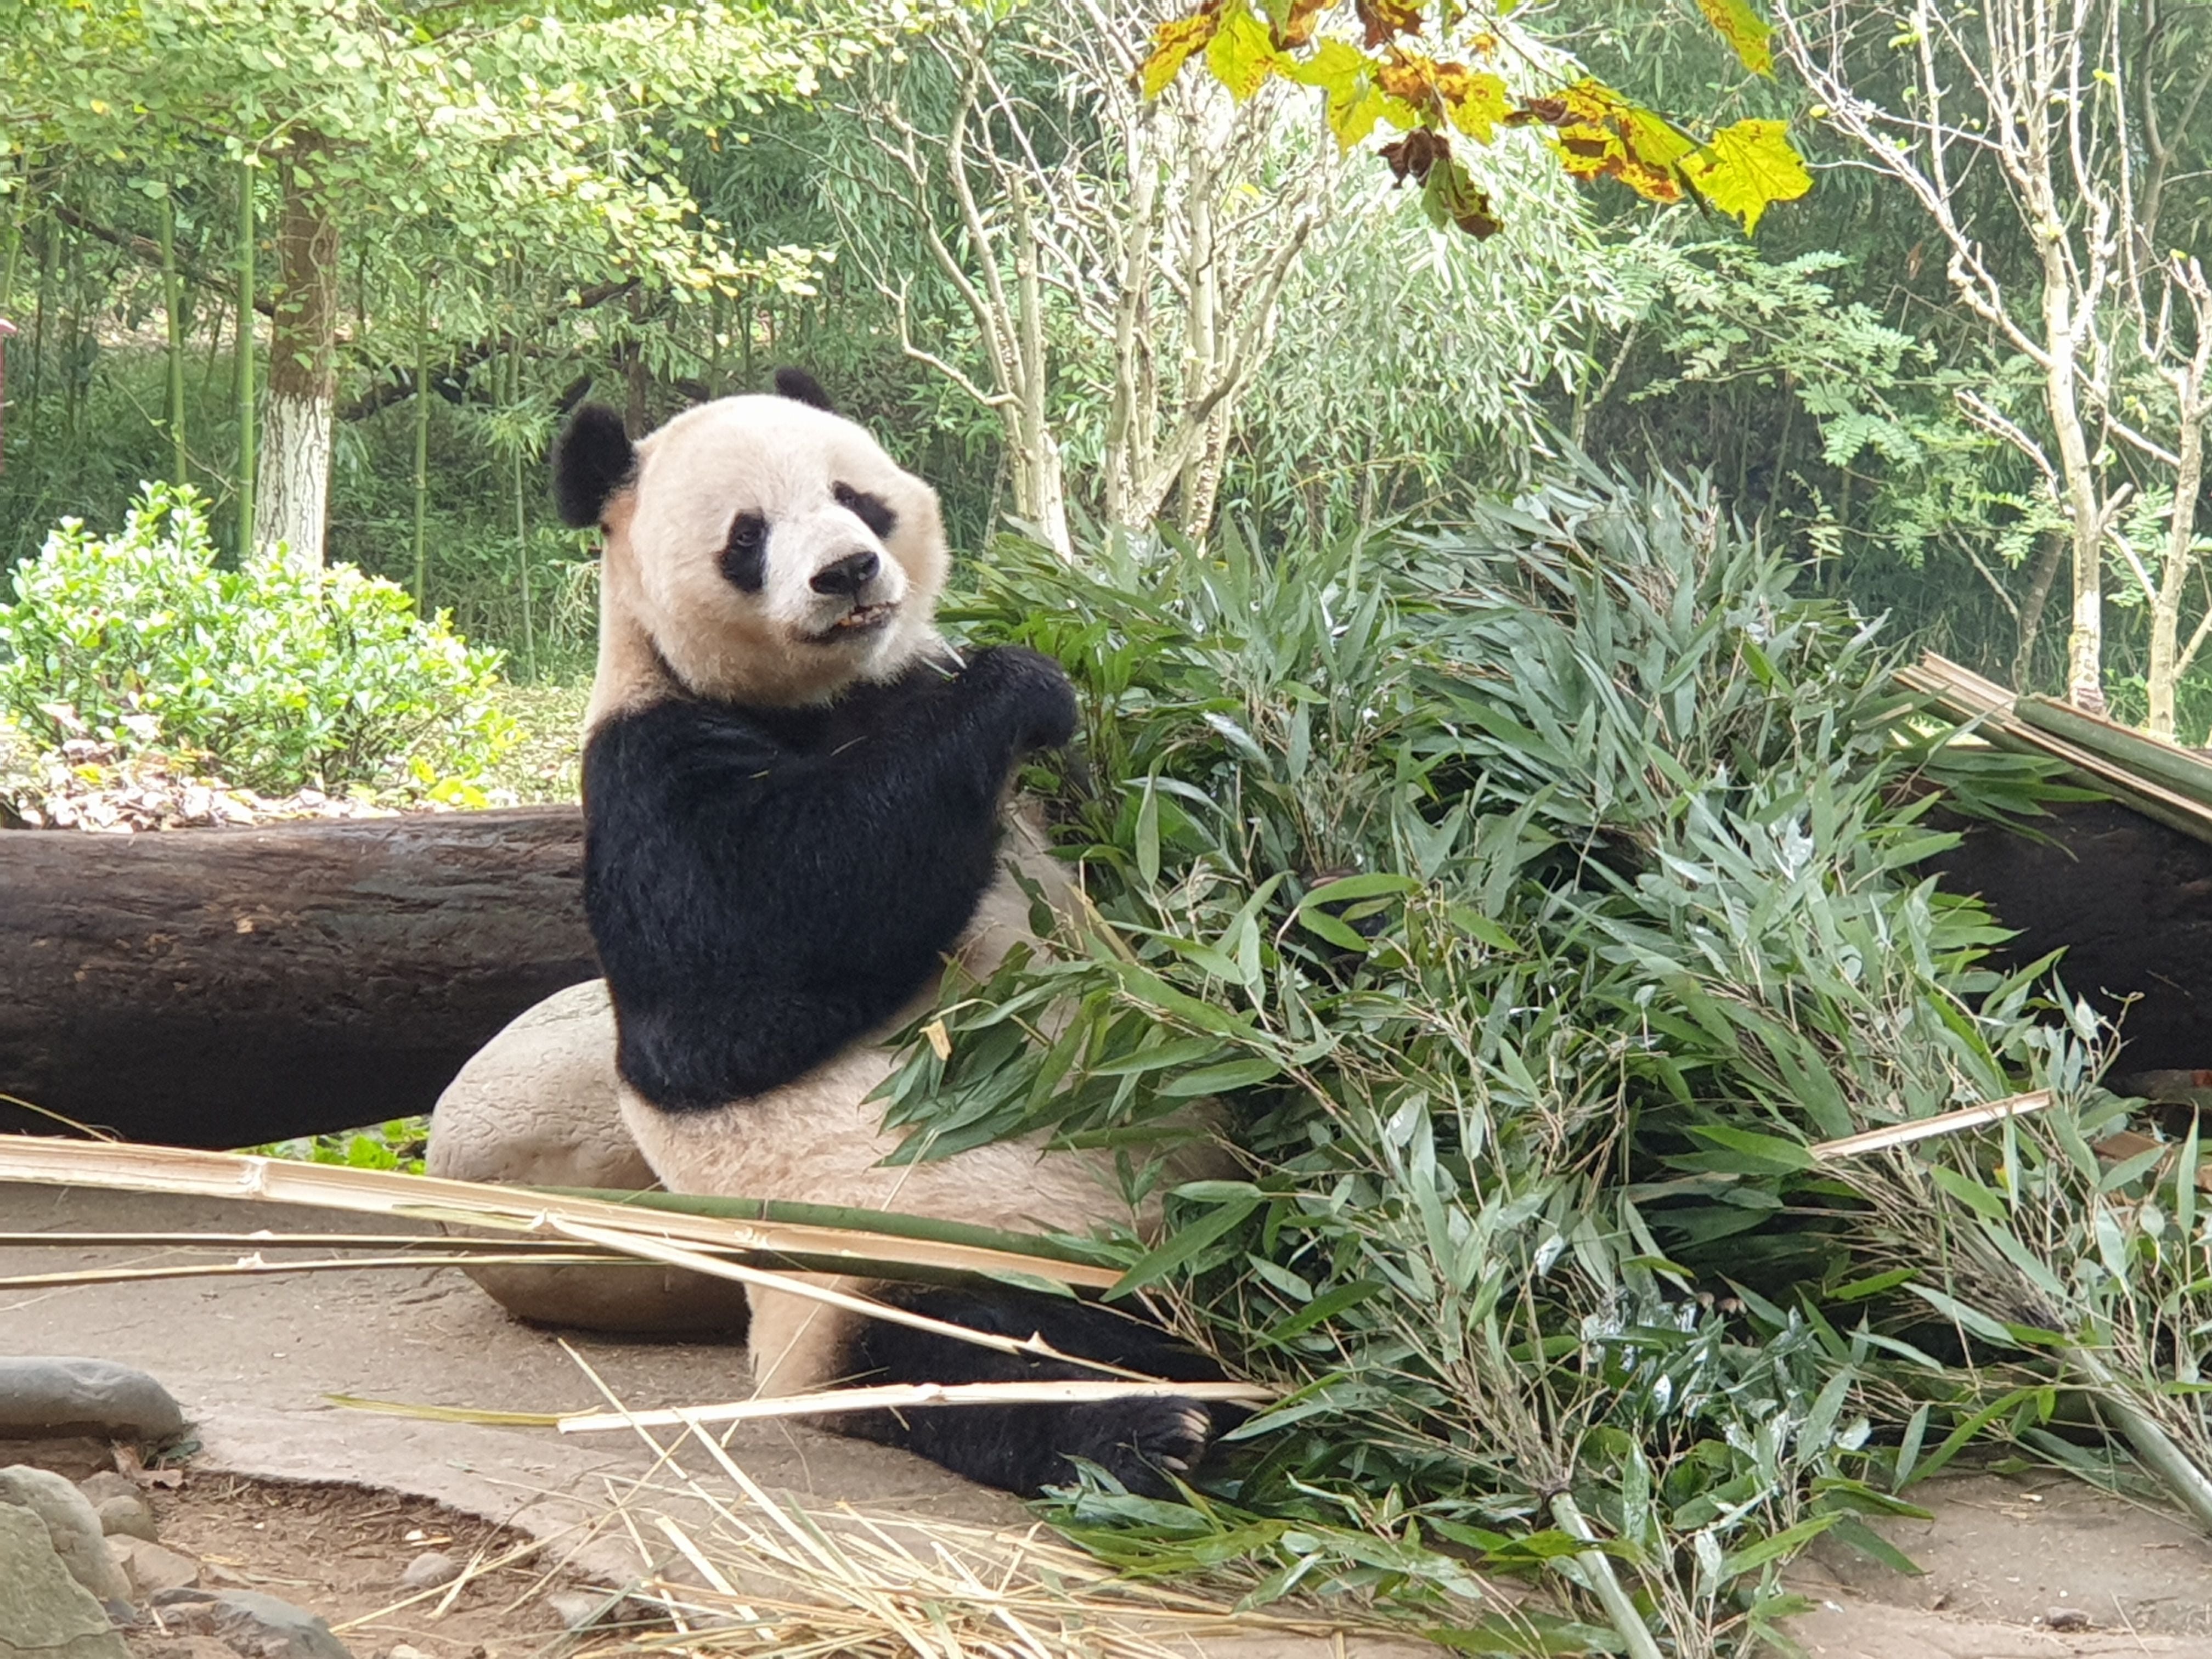 Um panda se alimenta de bambu na reserva de Dujiangyan.